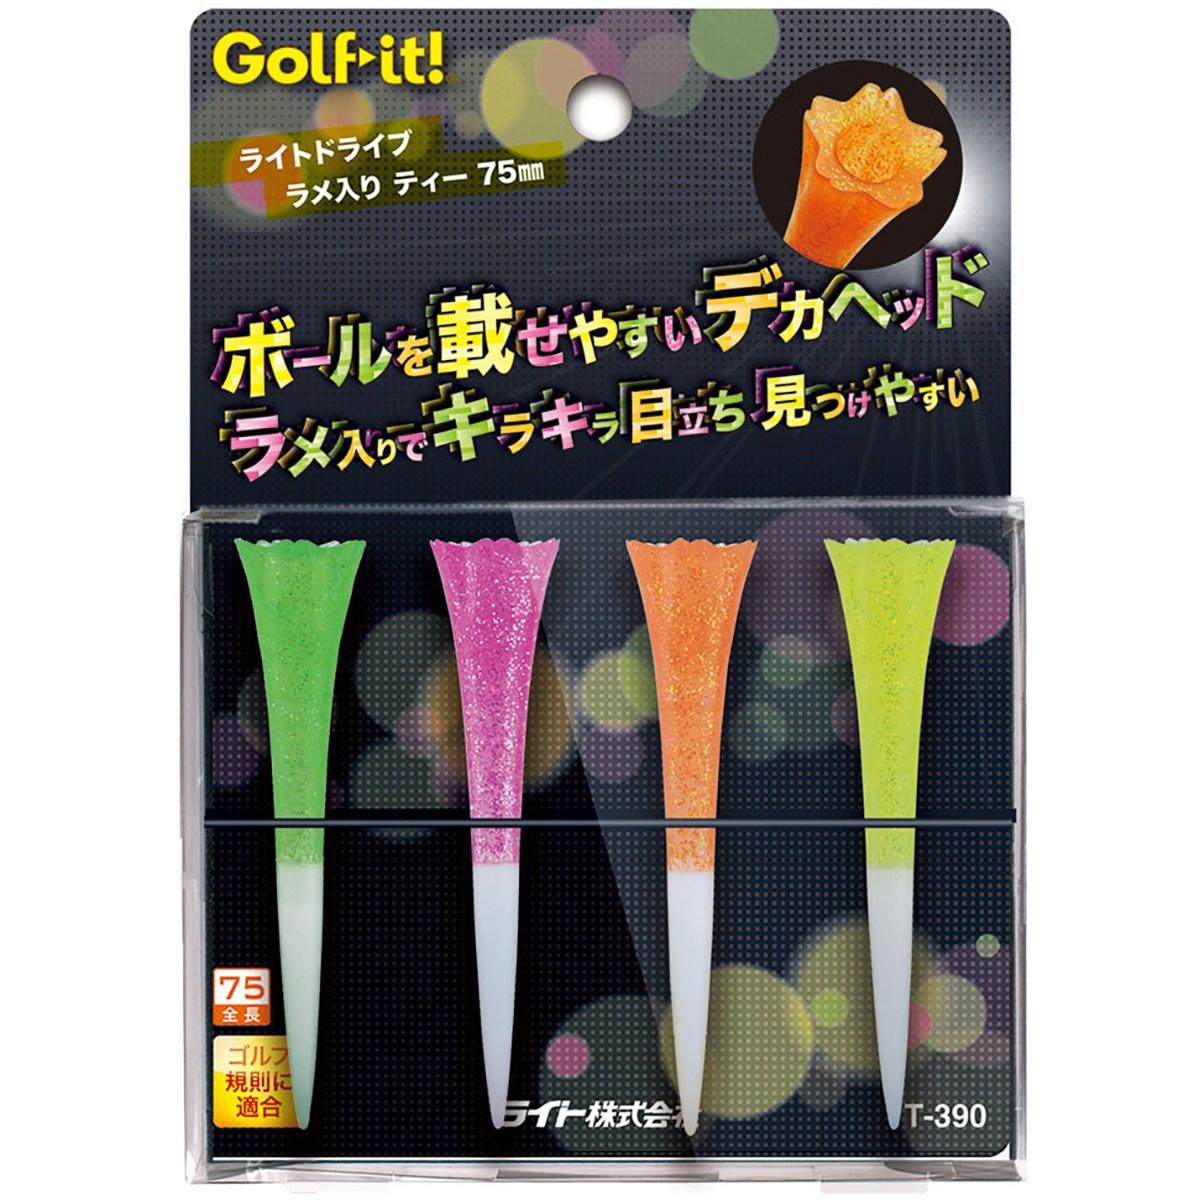 dショッピング | 『ラウンド用品・ゴルフボール』で絞り込んだGDOゴルフショップの通販できる商品一覧 | ドコモの通販サイト | ページ：12/82